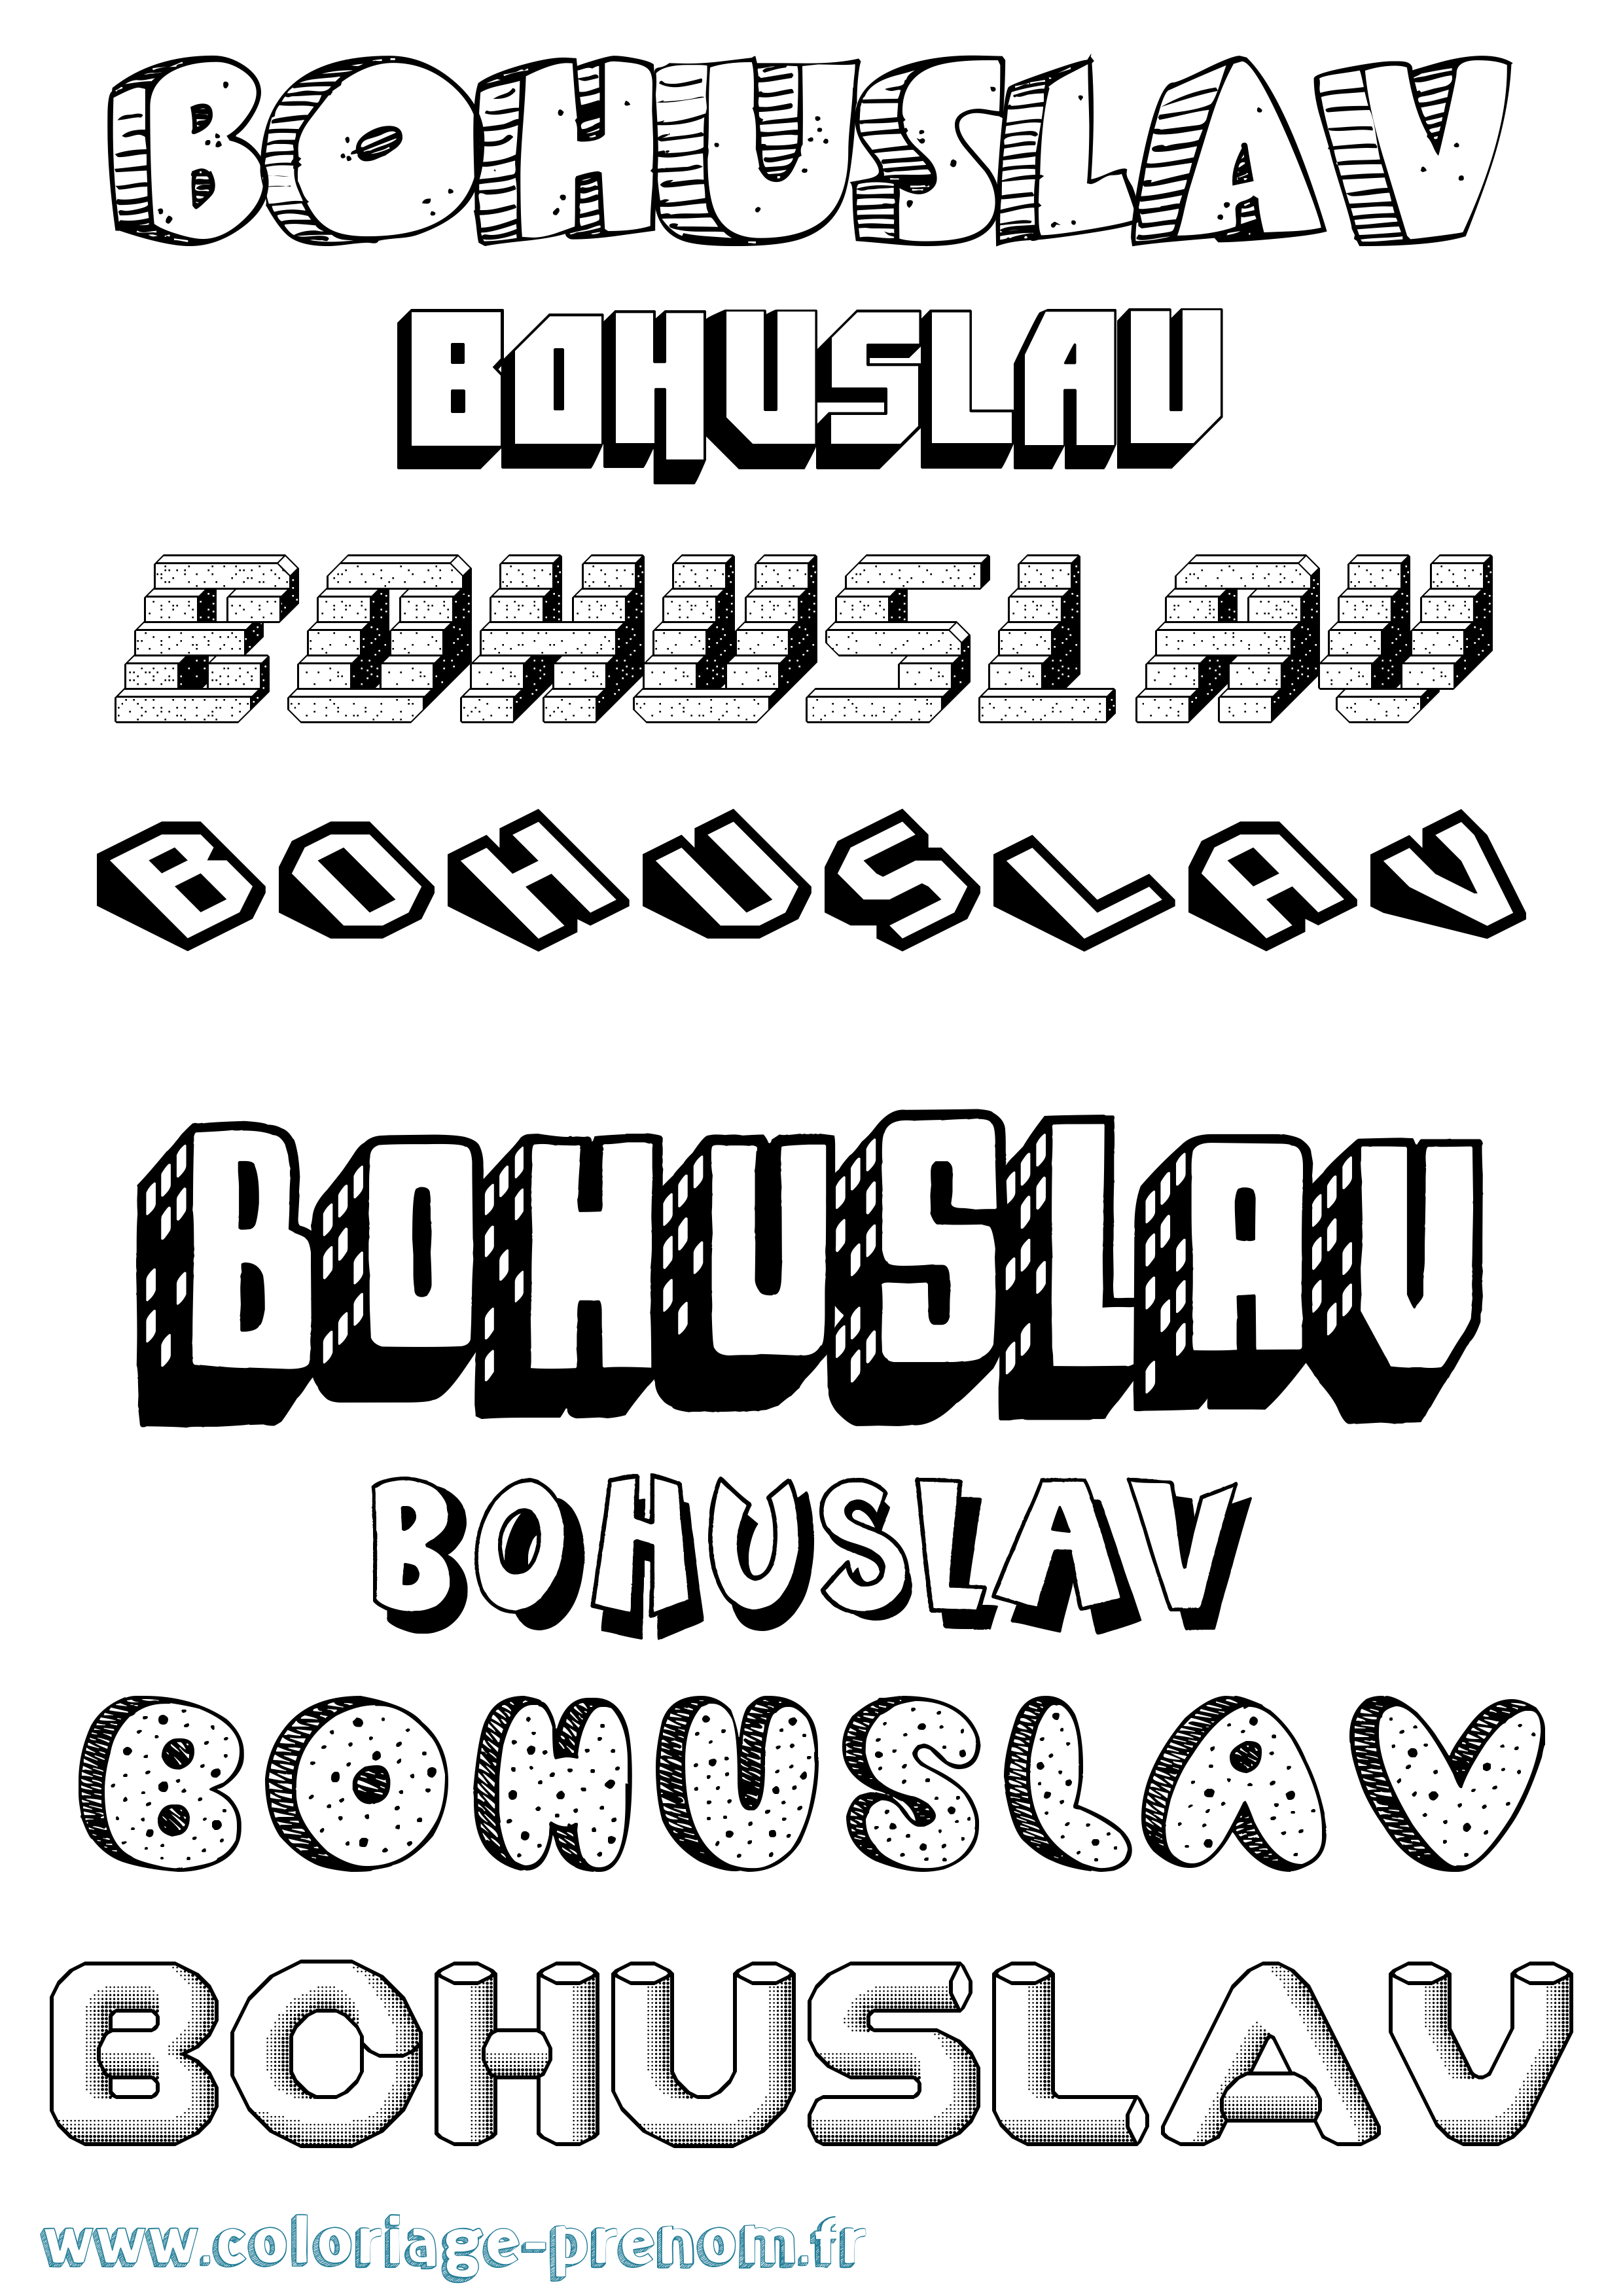 Coloriage prénom Bohuslav Effet 3D